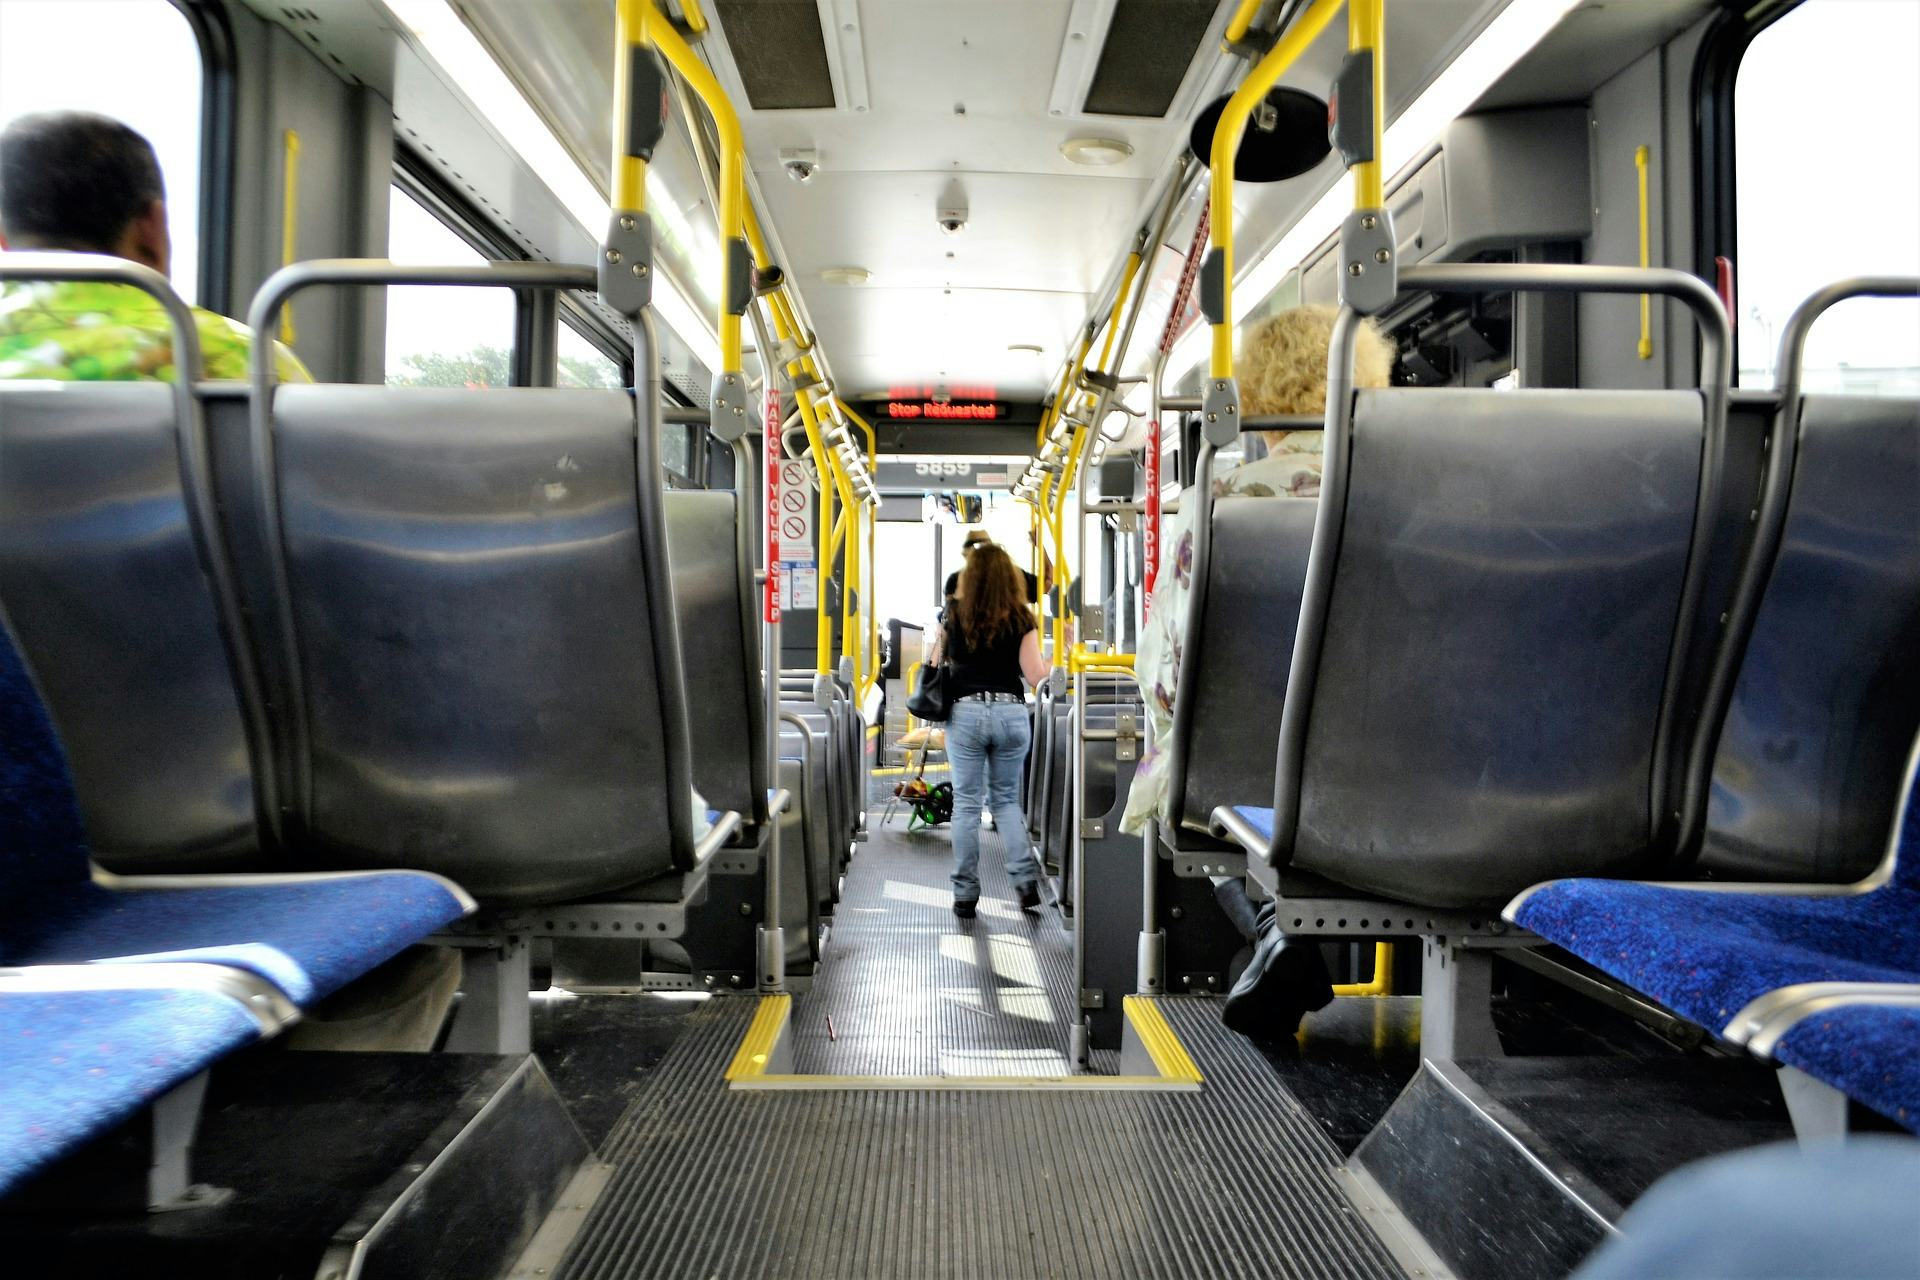 Kifid: In de bus moet tas met laptop op schoot of aan de voeten